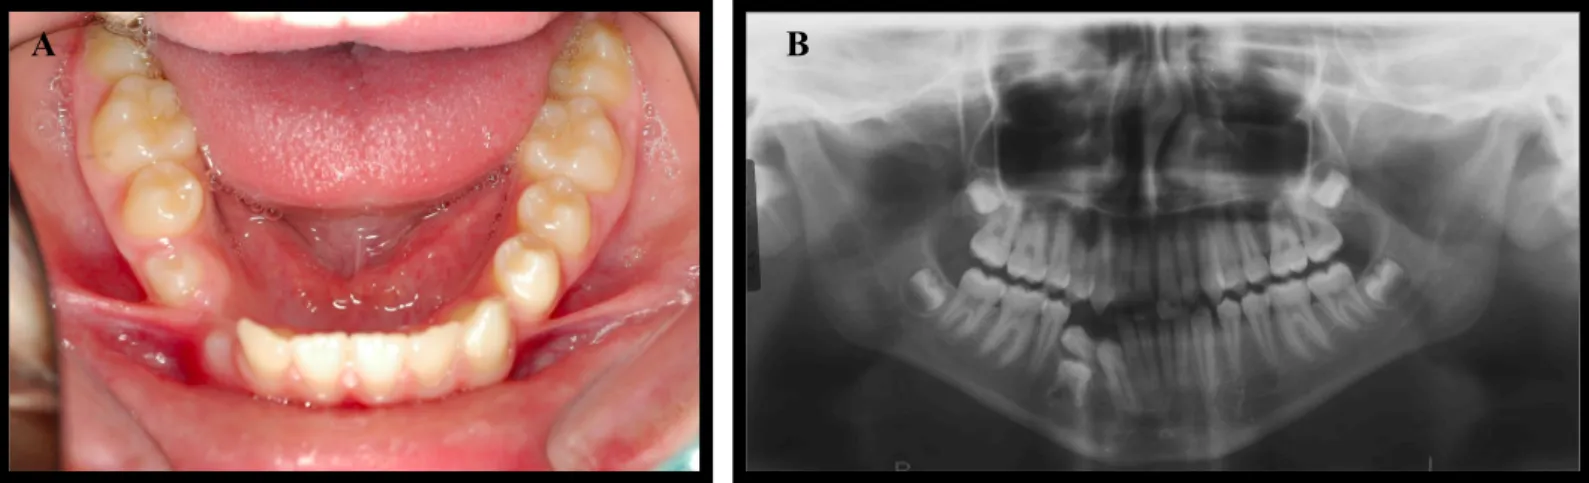 Figura 5. Fotografia intra-oral da arcada mandibular (A) e Ortopantomografia antes do tratamento (B)  (Caso clínico e imagens cedidas pelo Professor Doutor Jorge Dias Lopes).